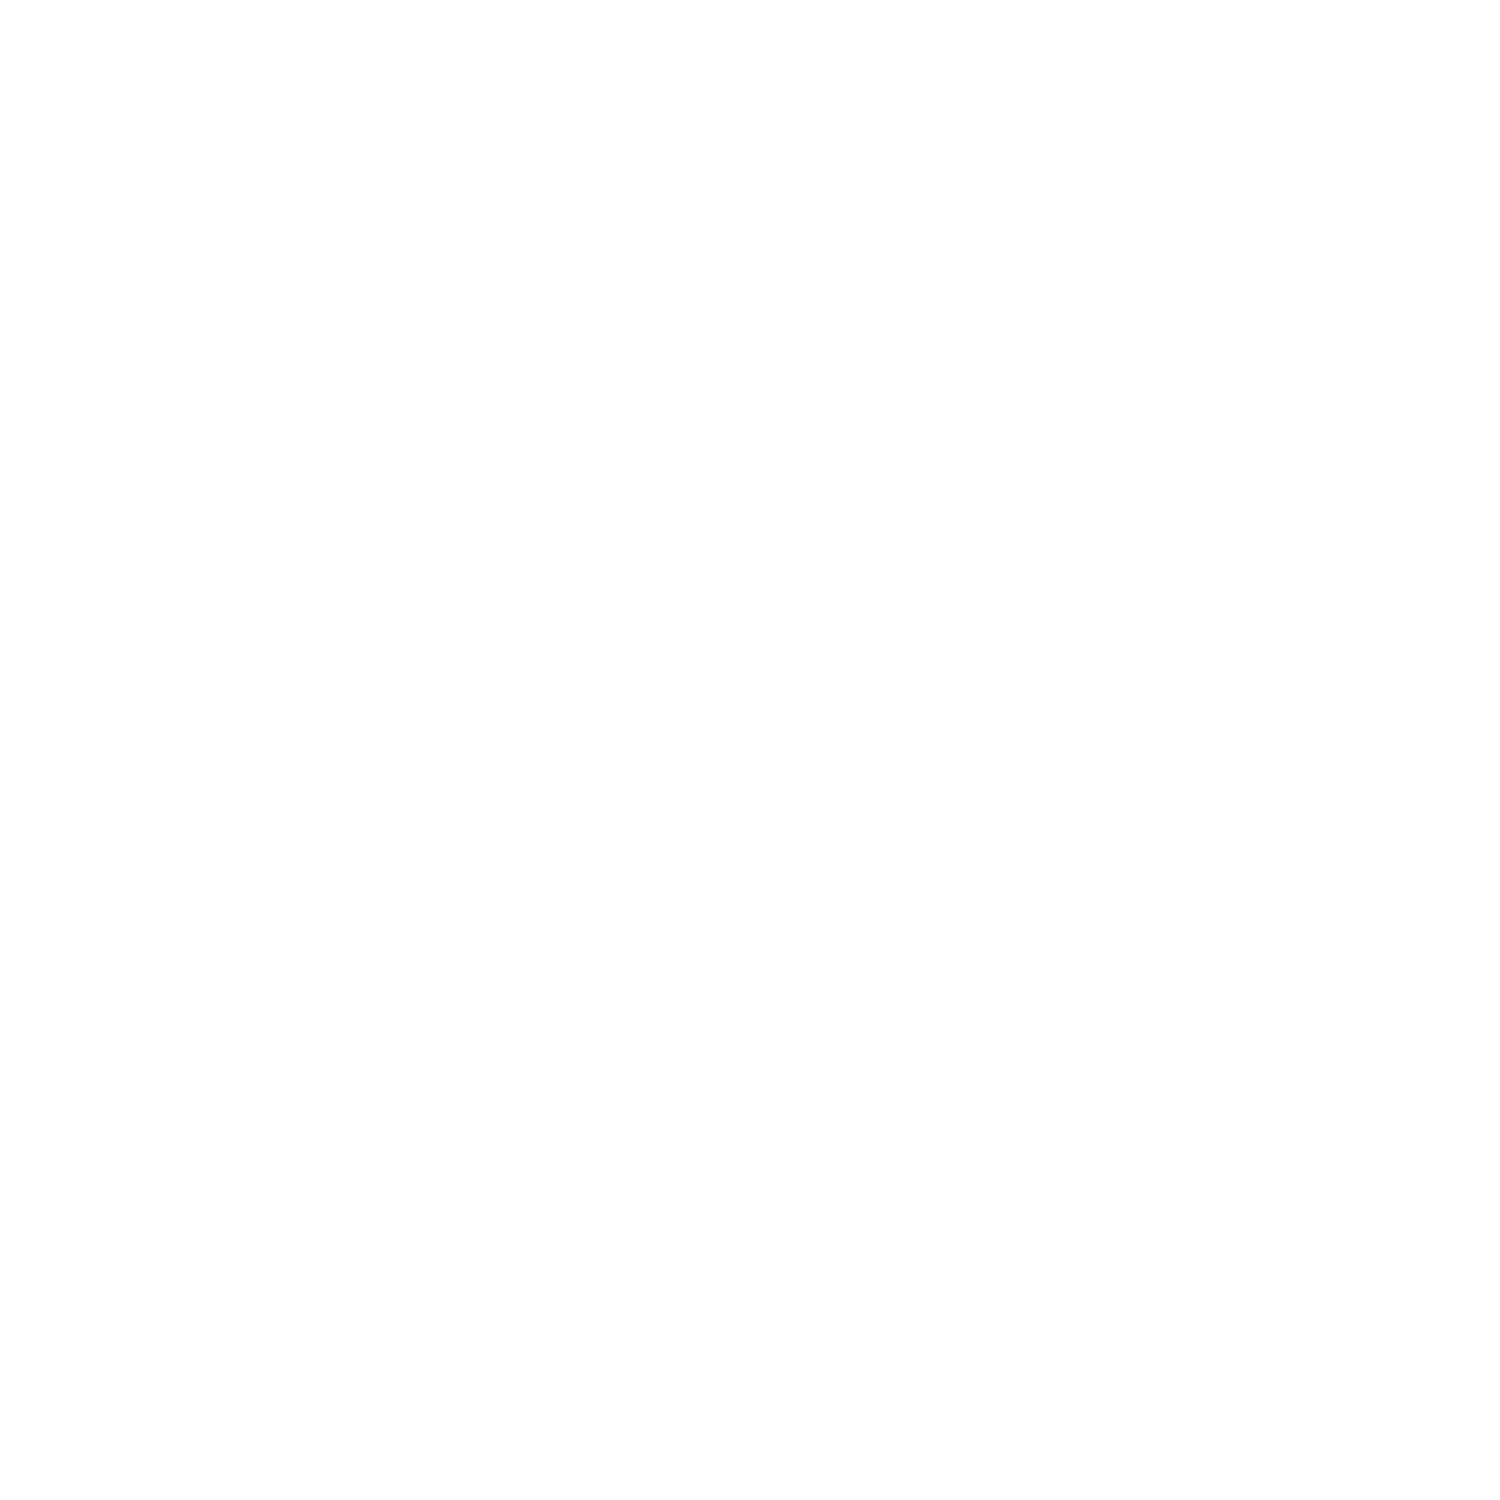 Texas Commercial Contractors